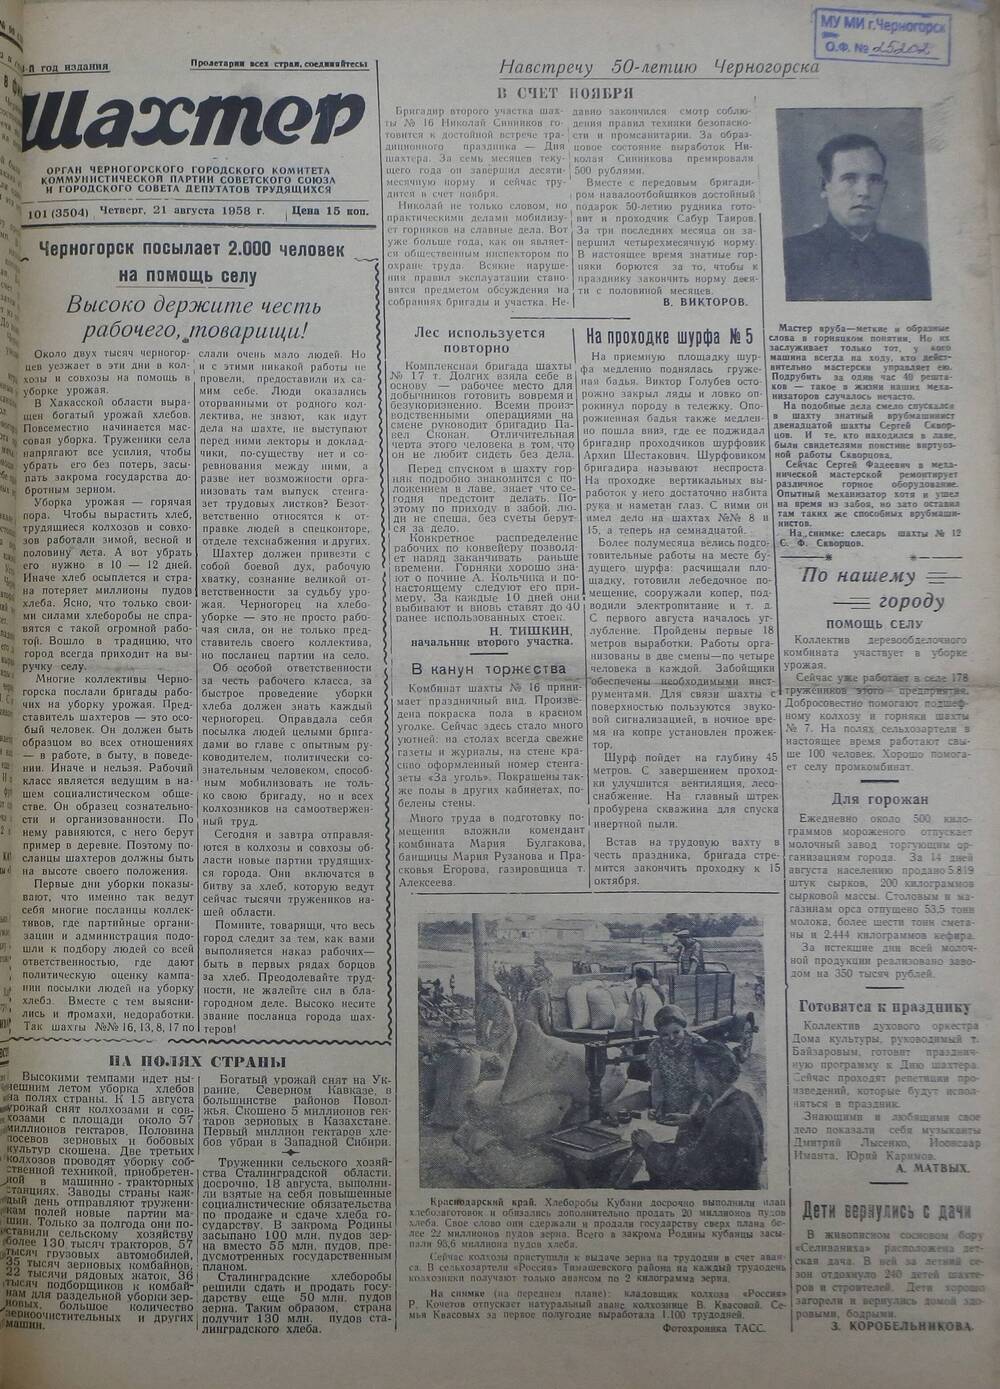 Газета «Шахтер». Выпуск № 101 от 21.08.1958 г.